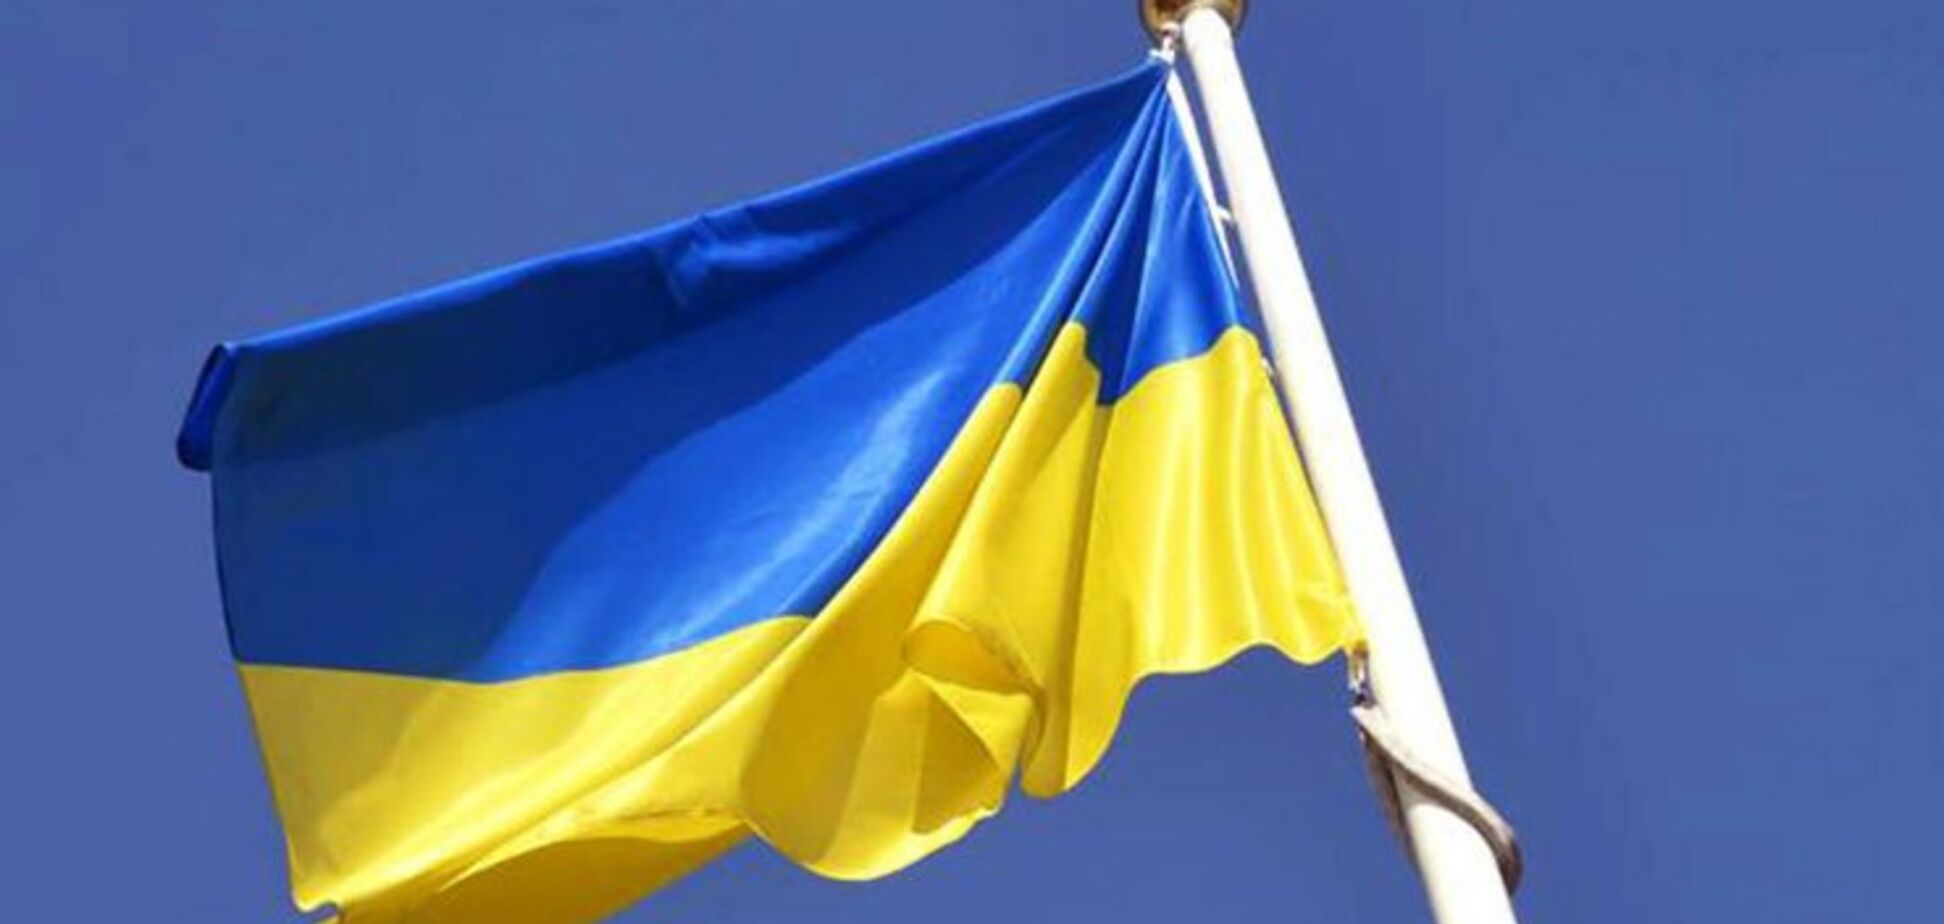 Над Кримом буде прапор України: Порошенко розлютив росіян потужним посланням